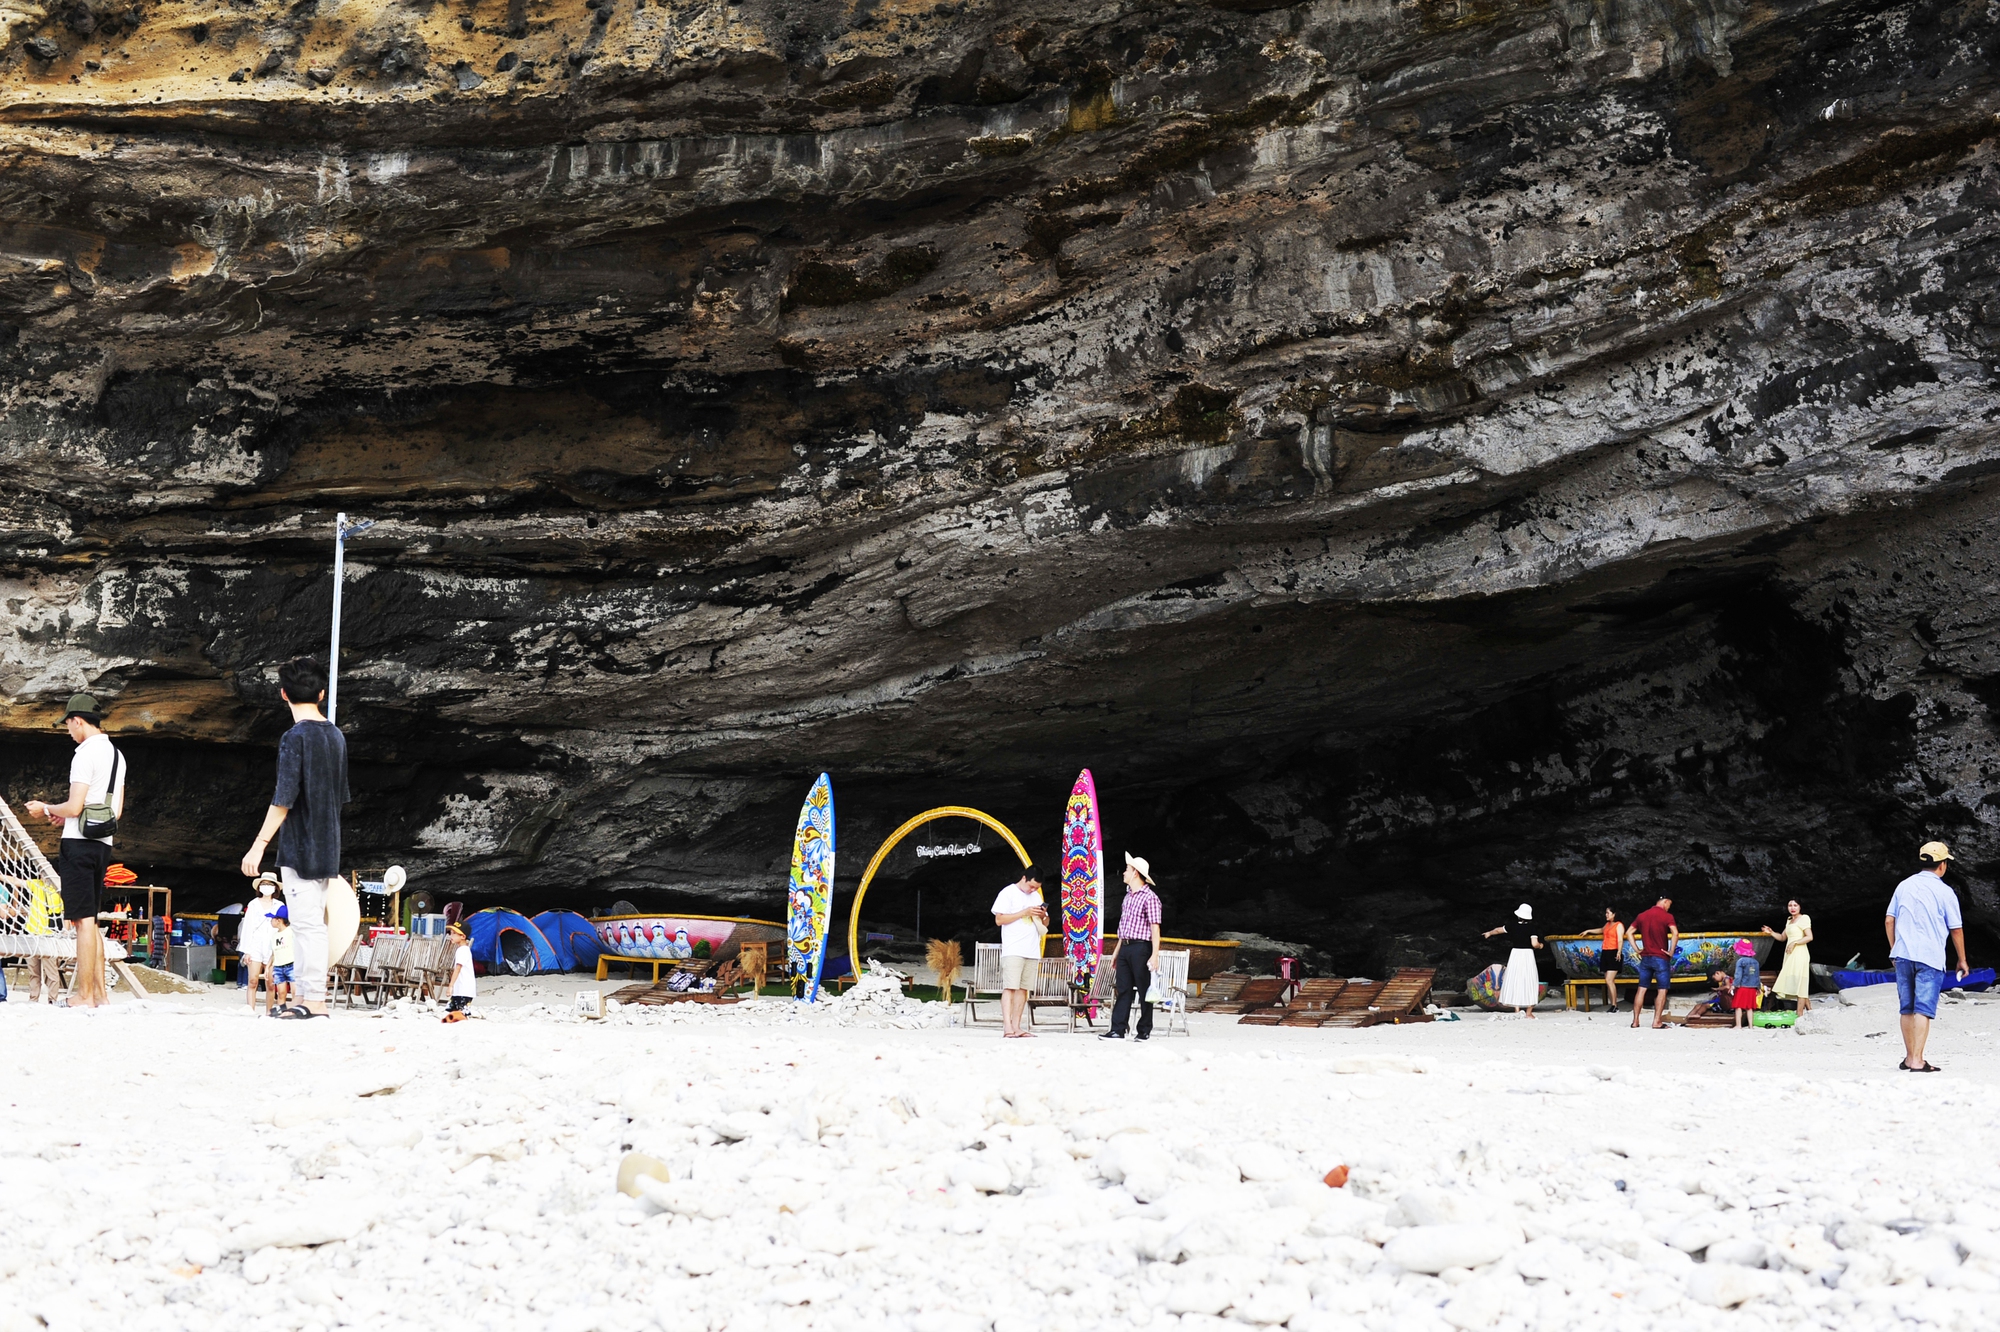 Ở dưới chân núi, ẩn mình vào bờ đá kì vĩ, khổng lồ chiếc hang được người dân gọ là Hang Câu. Hiện nay người dân địa phương đang mở rộng làm khu du lịch sinh thái.